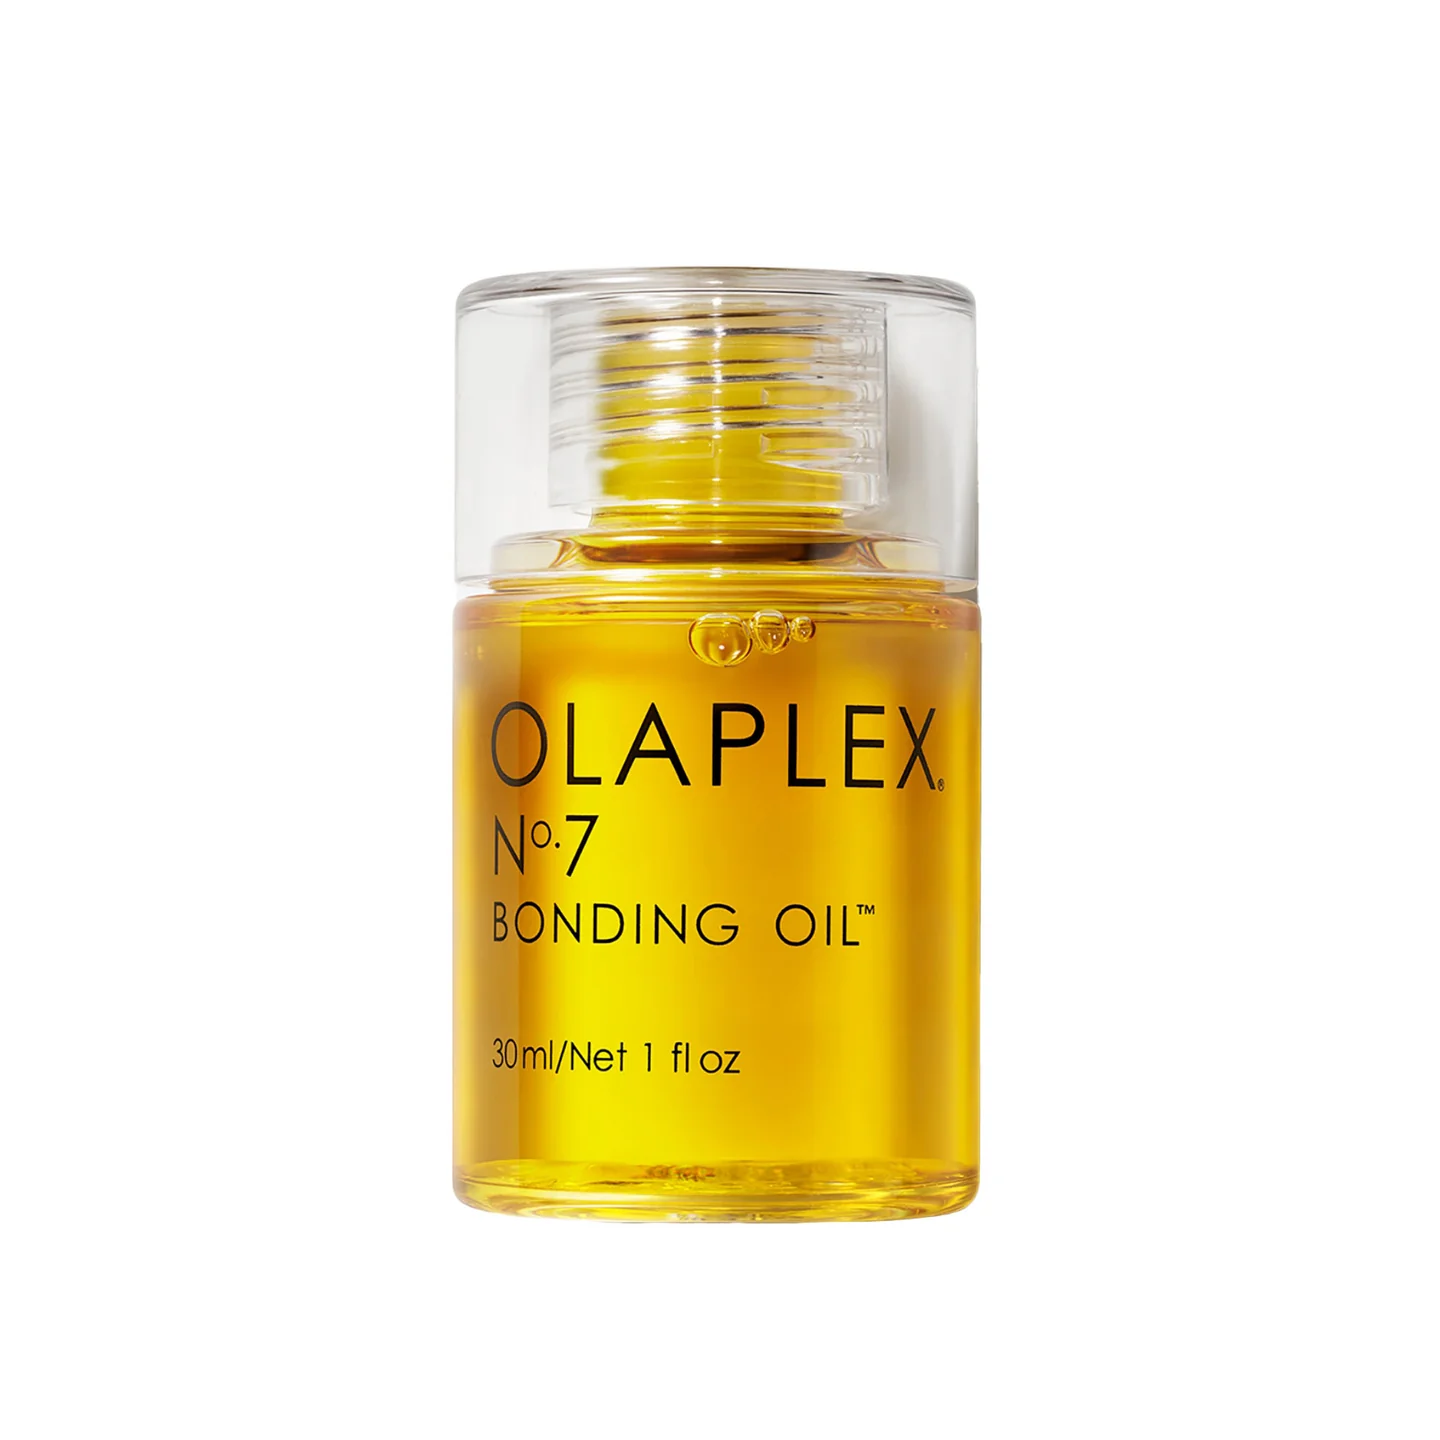 OLAPLEX N°.7 BONDING OIL™ grid image